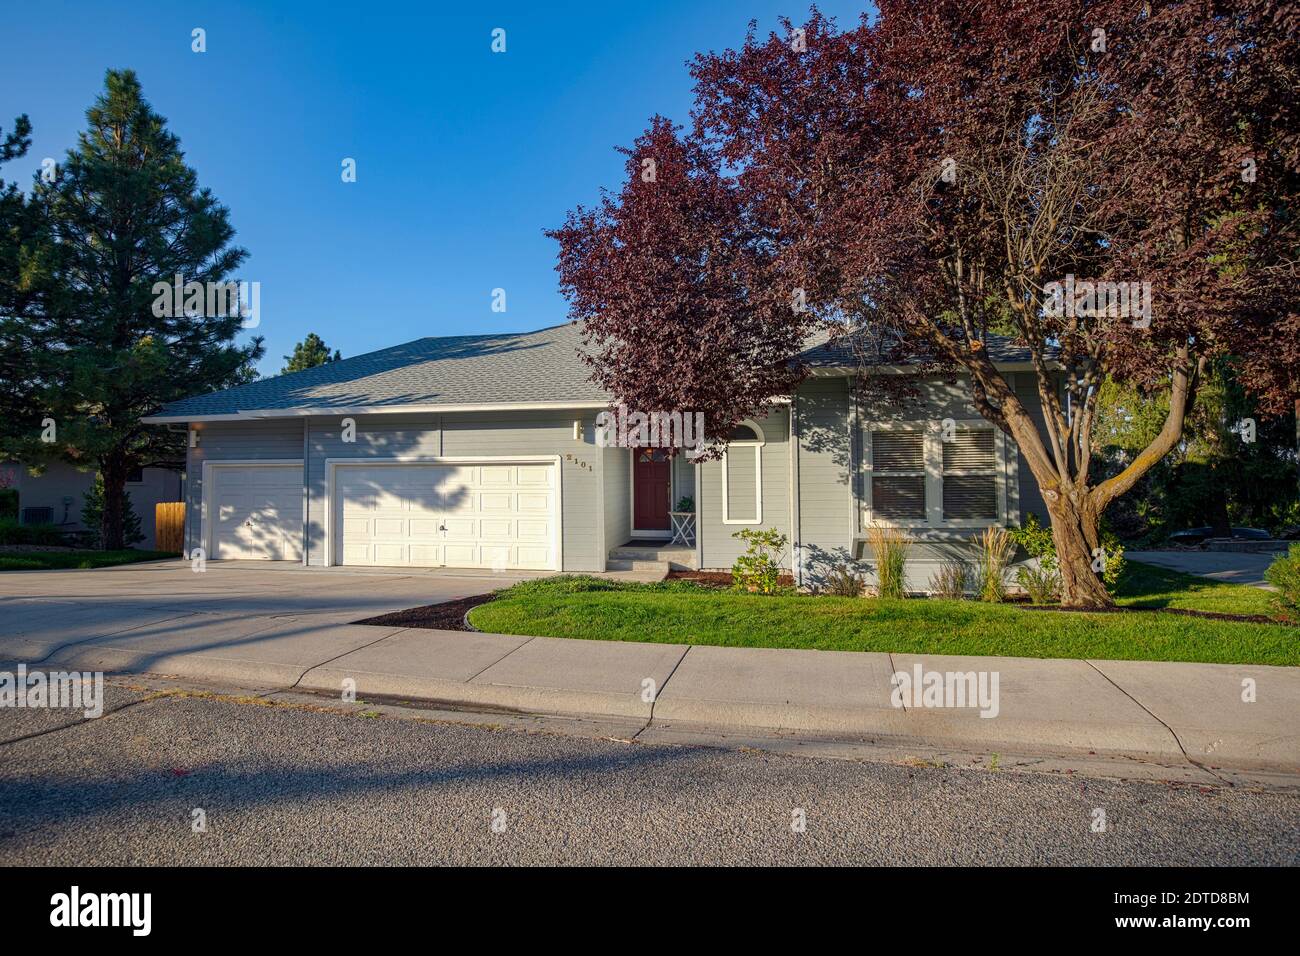 USA, Idaho, Boise, Exterior of single family home on sunny morning Stock Photo